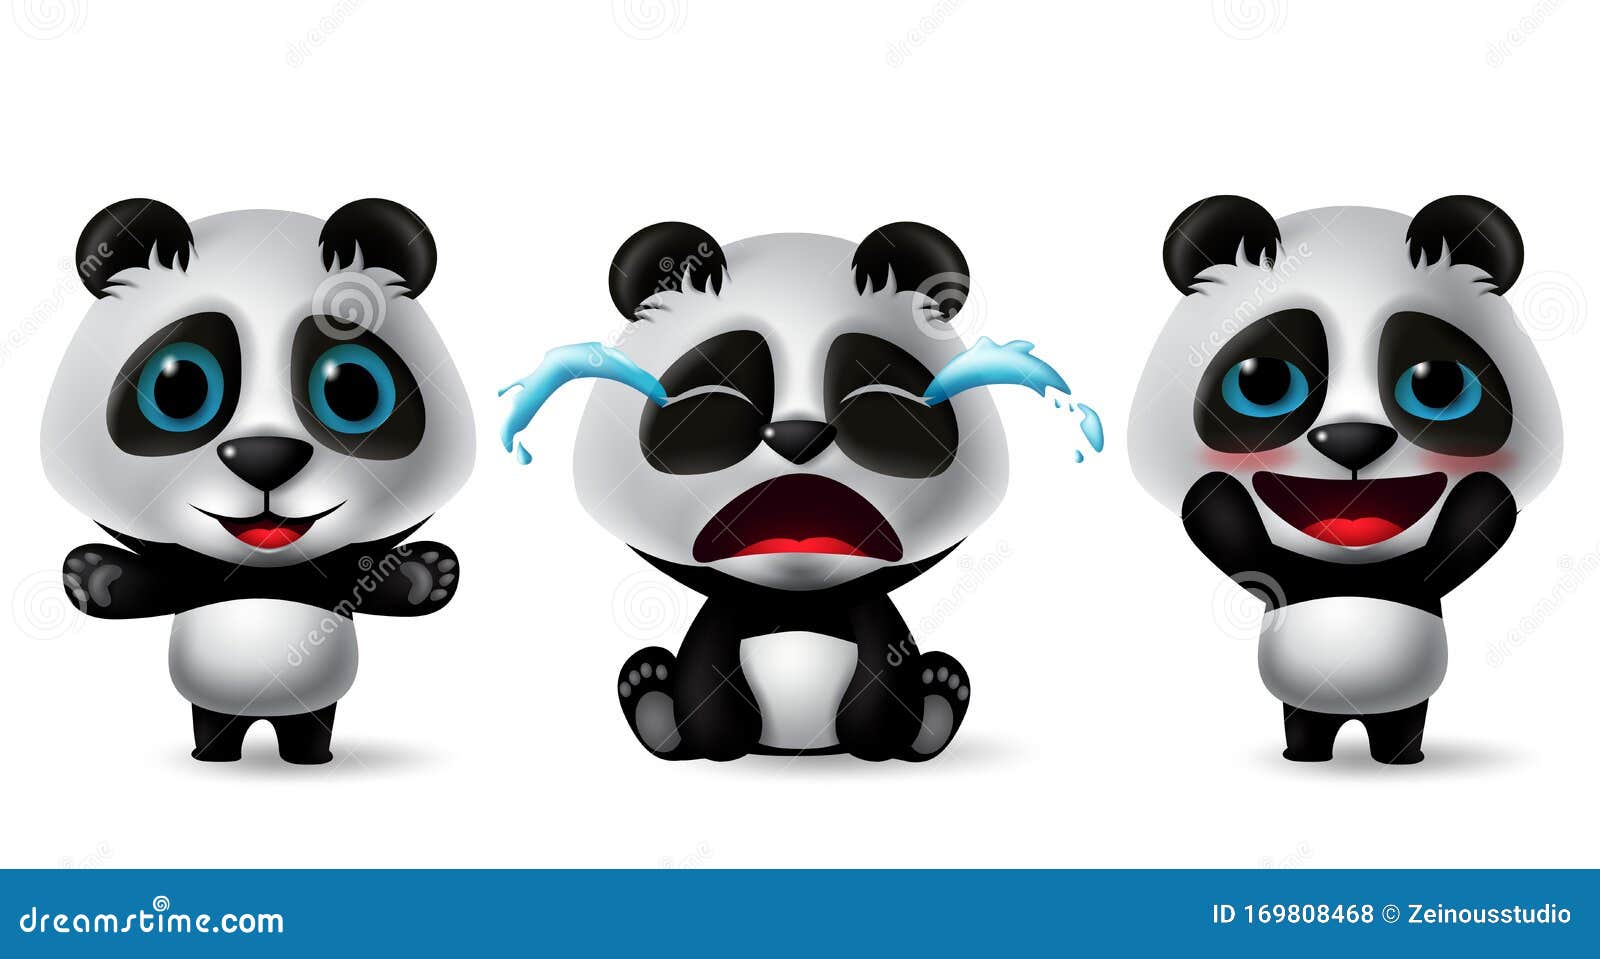 沙雕熊猫头：我哭的很大声表情_斗图表情 – 表情包制作